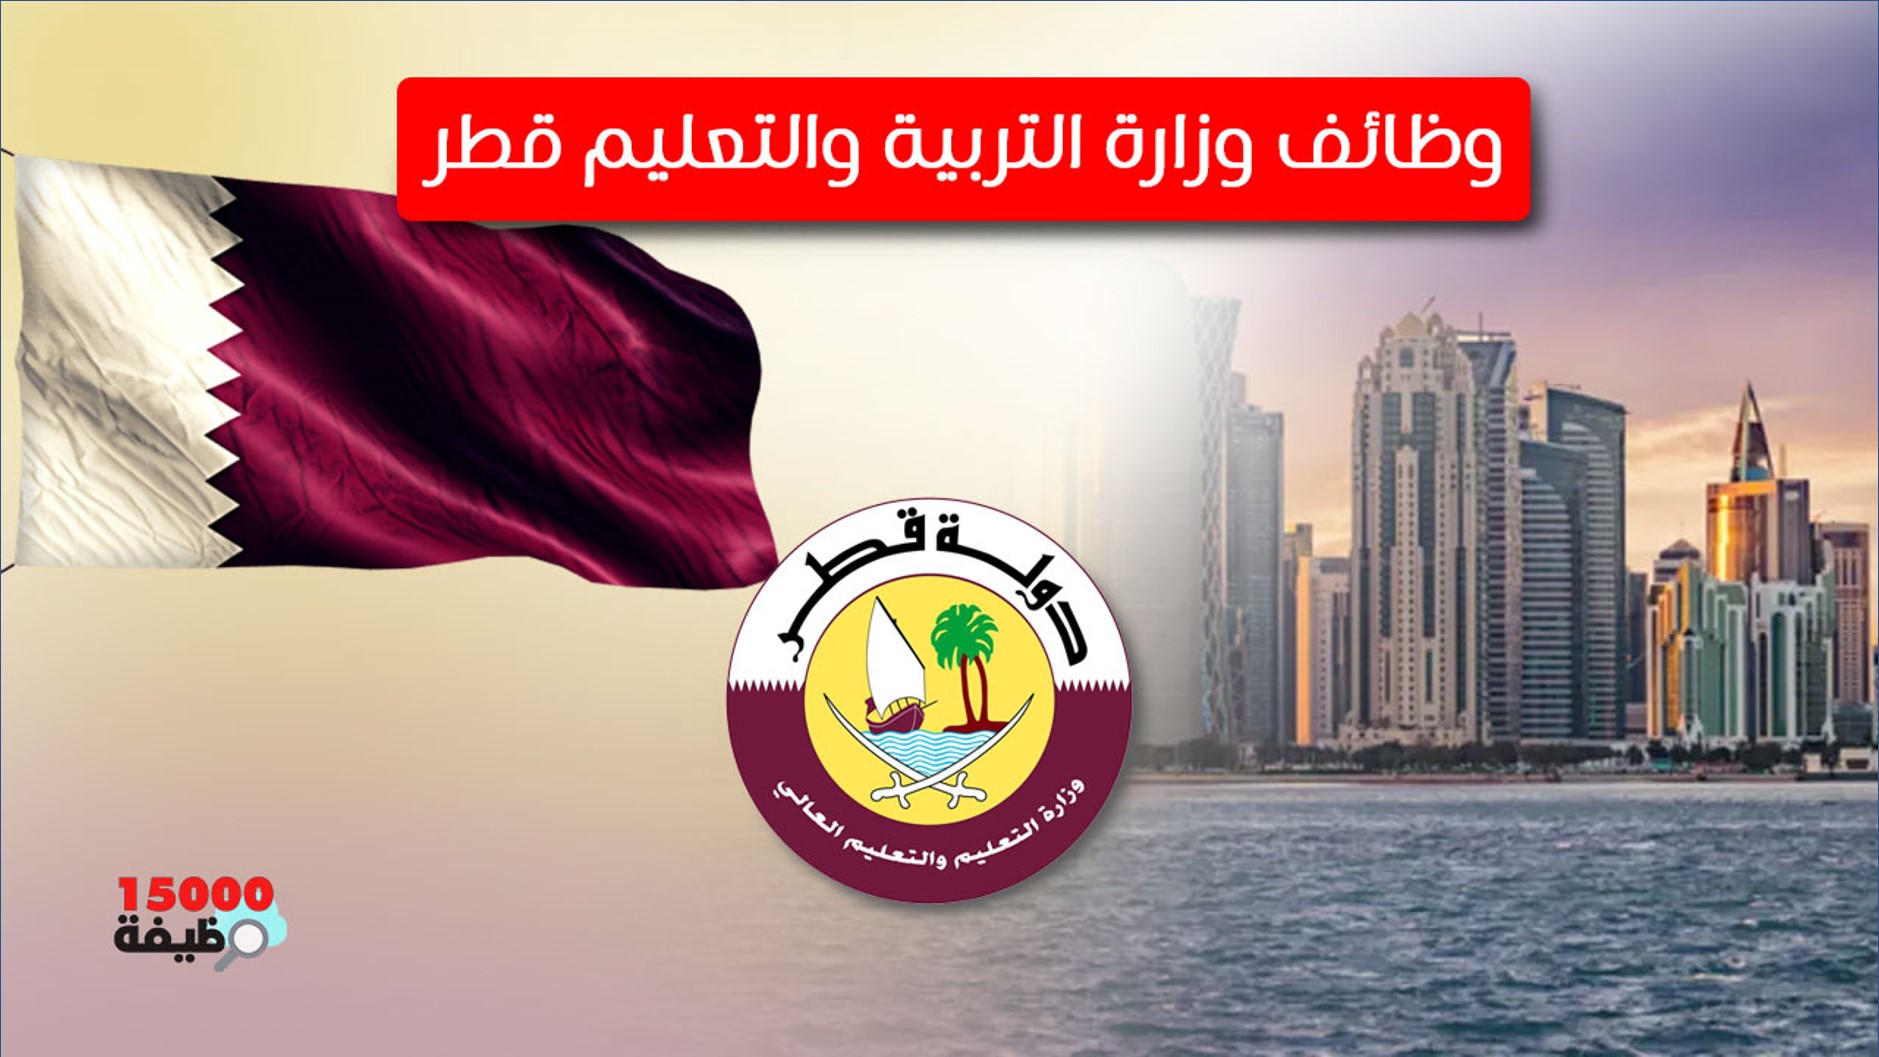 وظائف وزارة التربية والتعليم بدولة قطر لمختلف التخصصات التعليمية